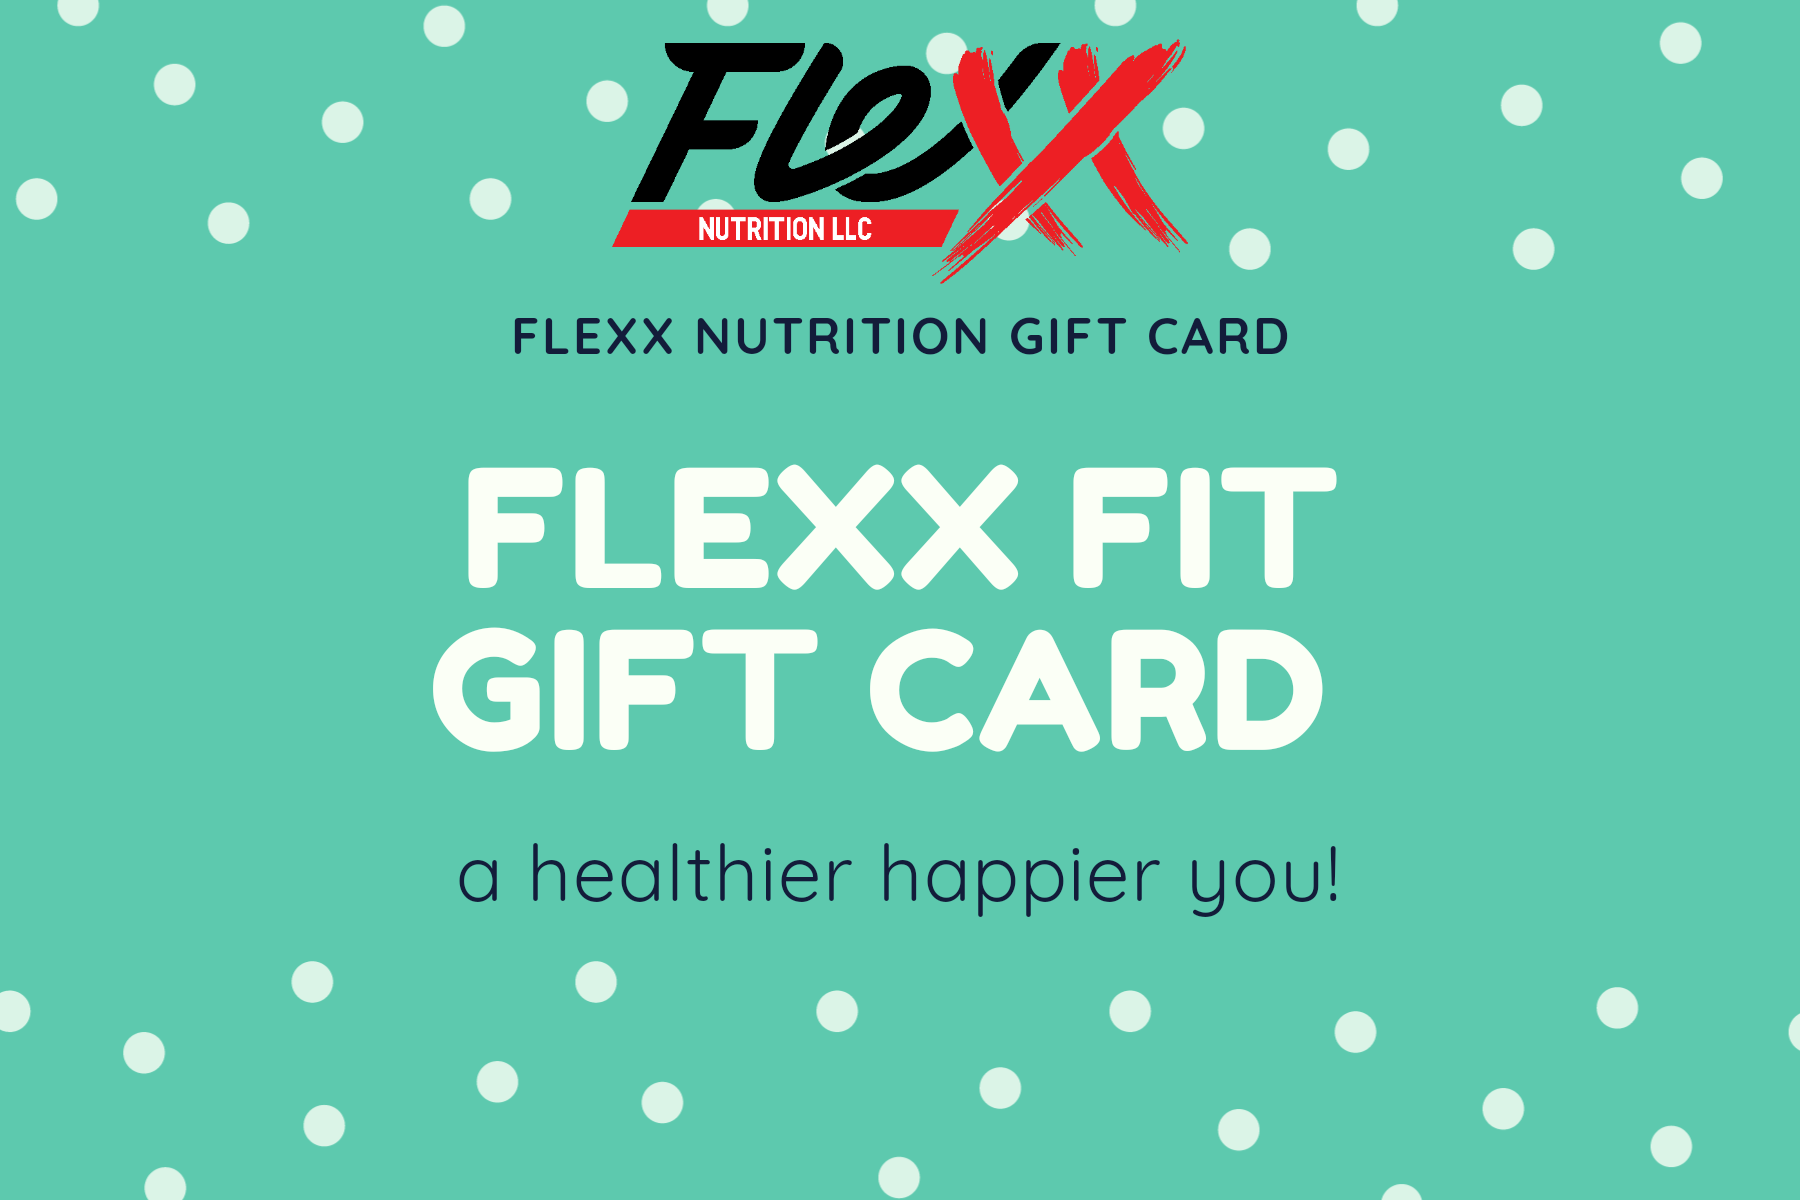 FLEXX GIFT CARD